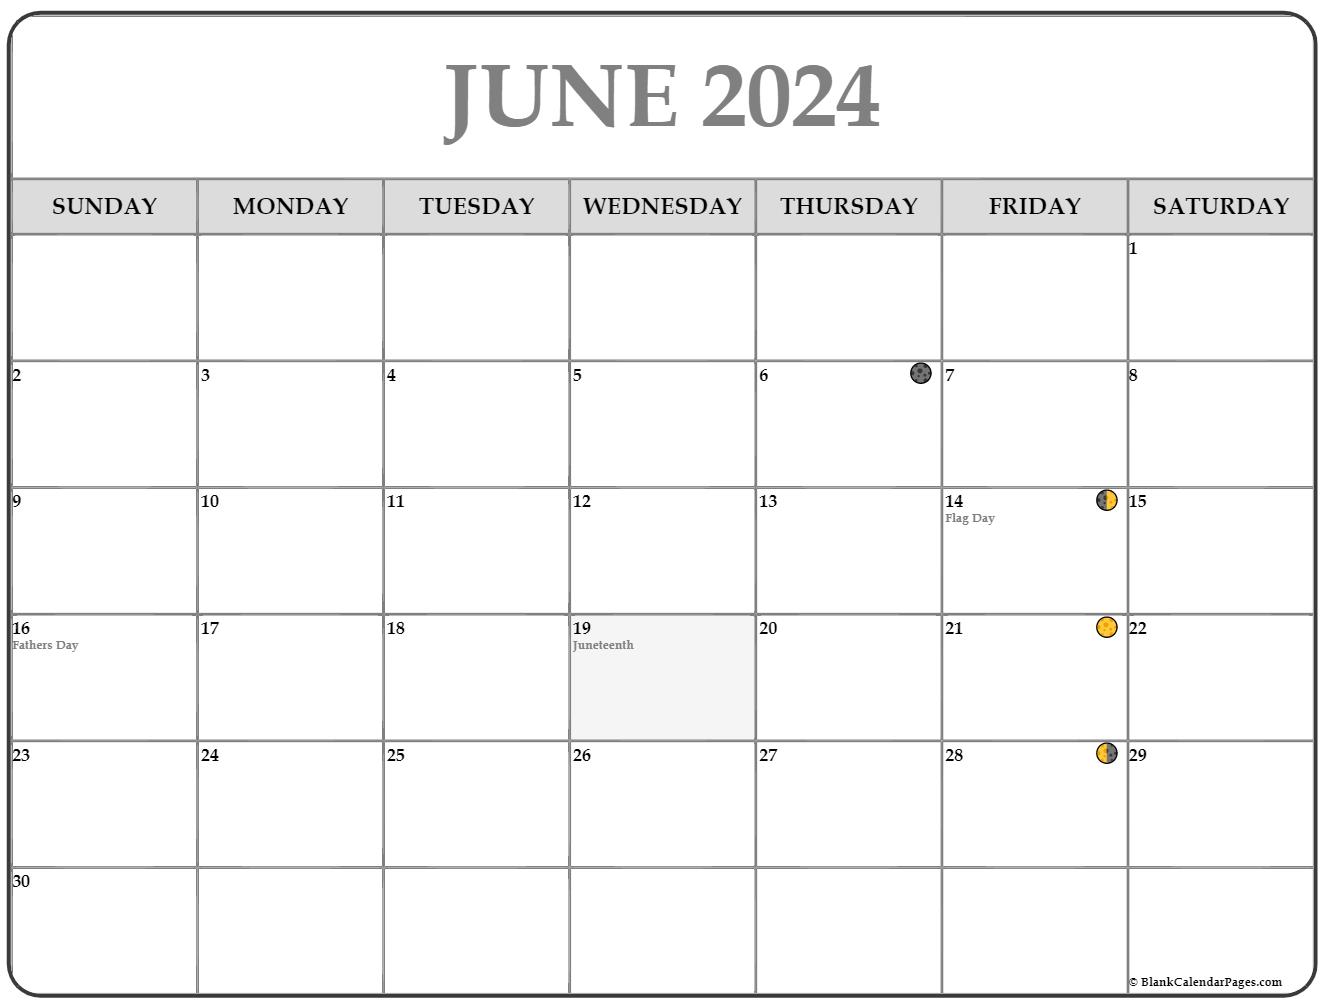 New Moon Calendar June 2022 June 2021 Lunar Calendar | Moon Phase Calendar